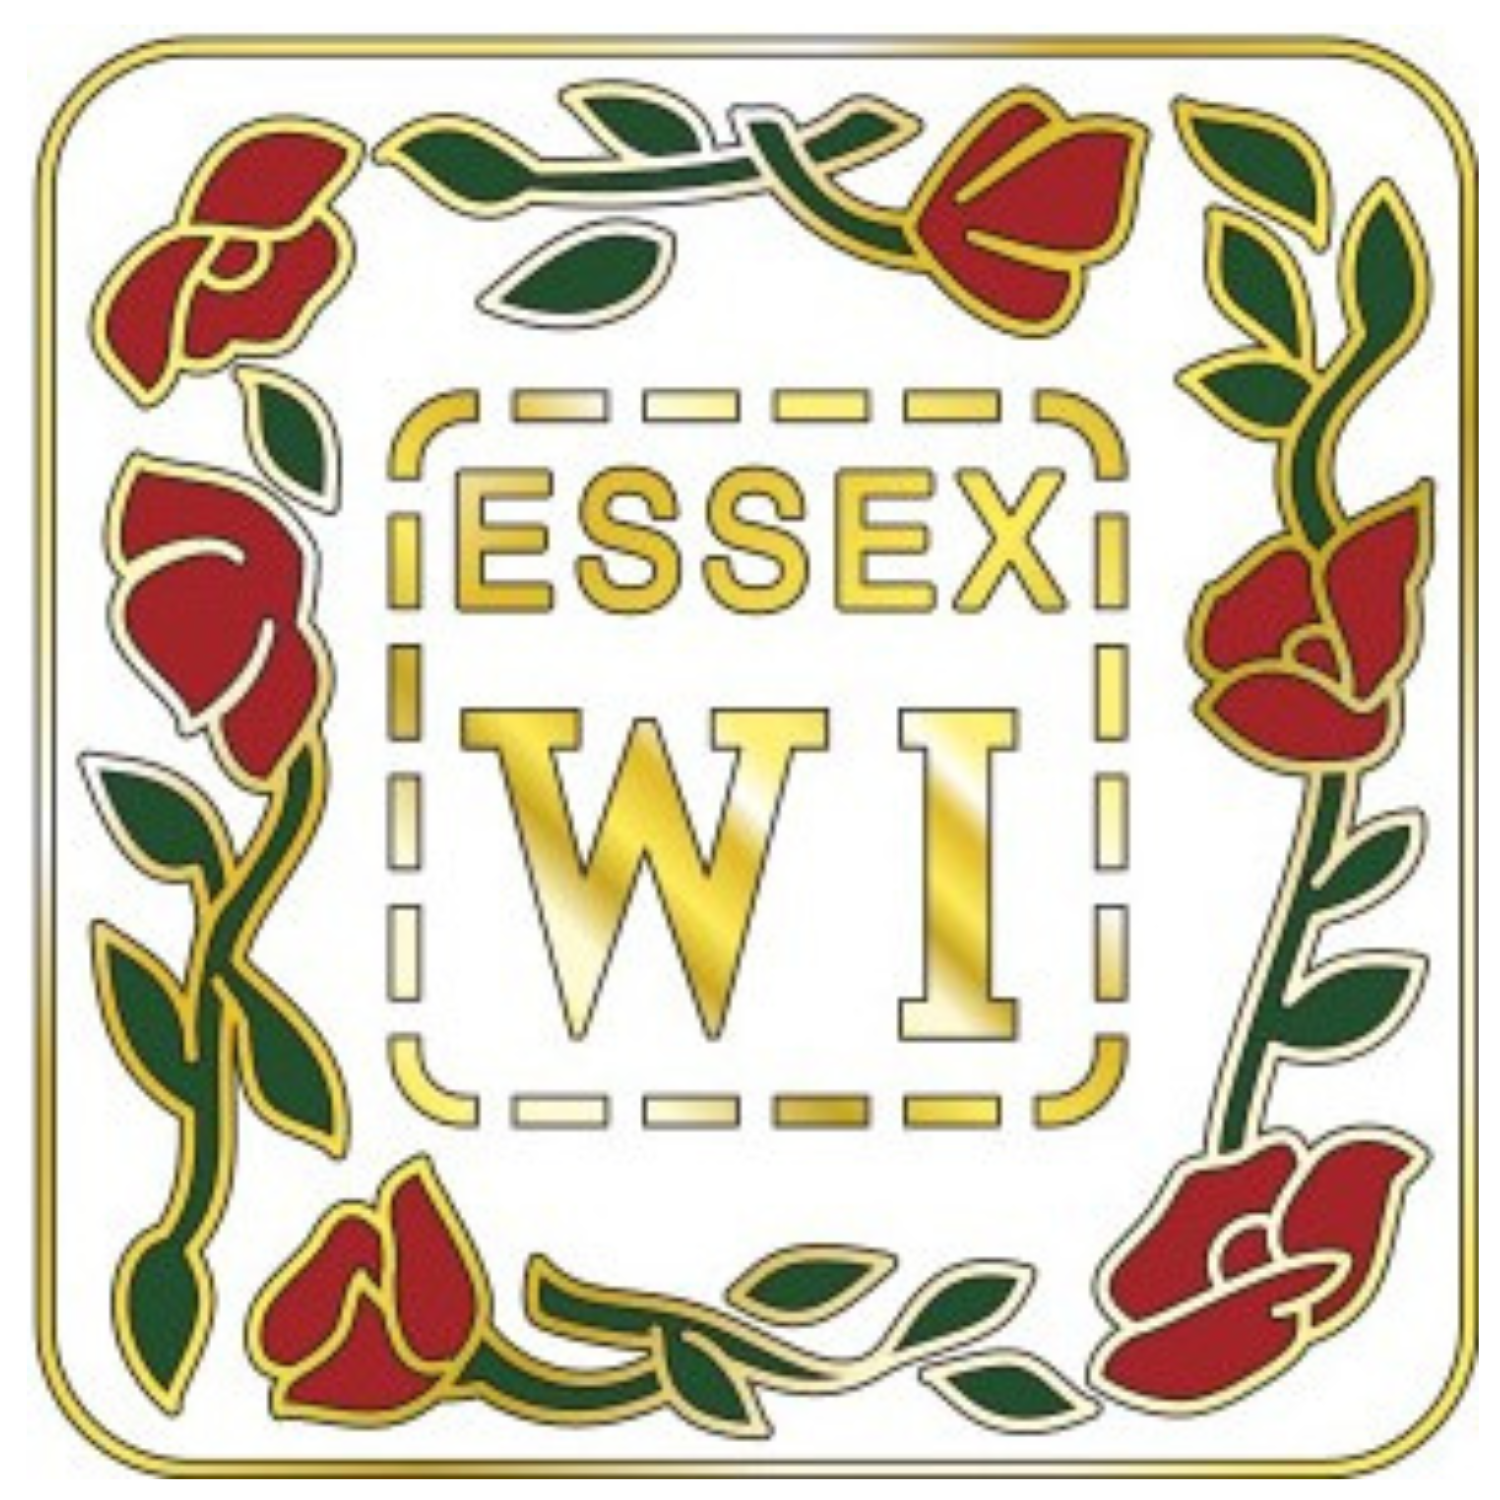 Essex Women’s Institute